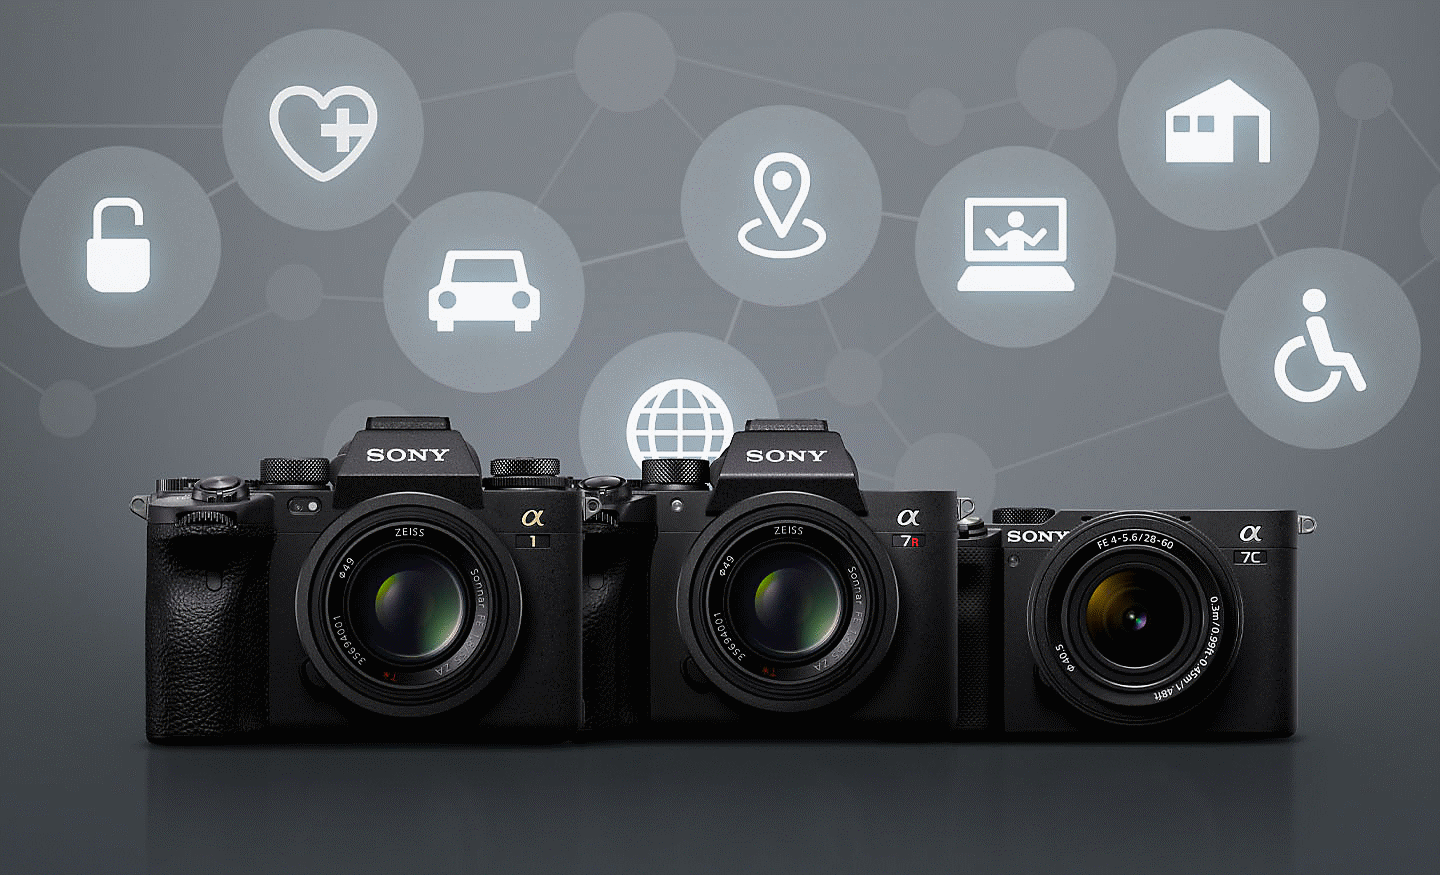 Четыре камеры от Sony на сером фоне с различными белыми значками, символизирующими возможности удаленного подключения